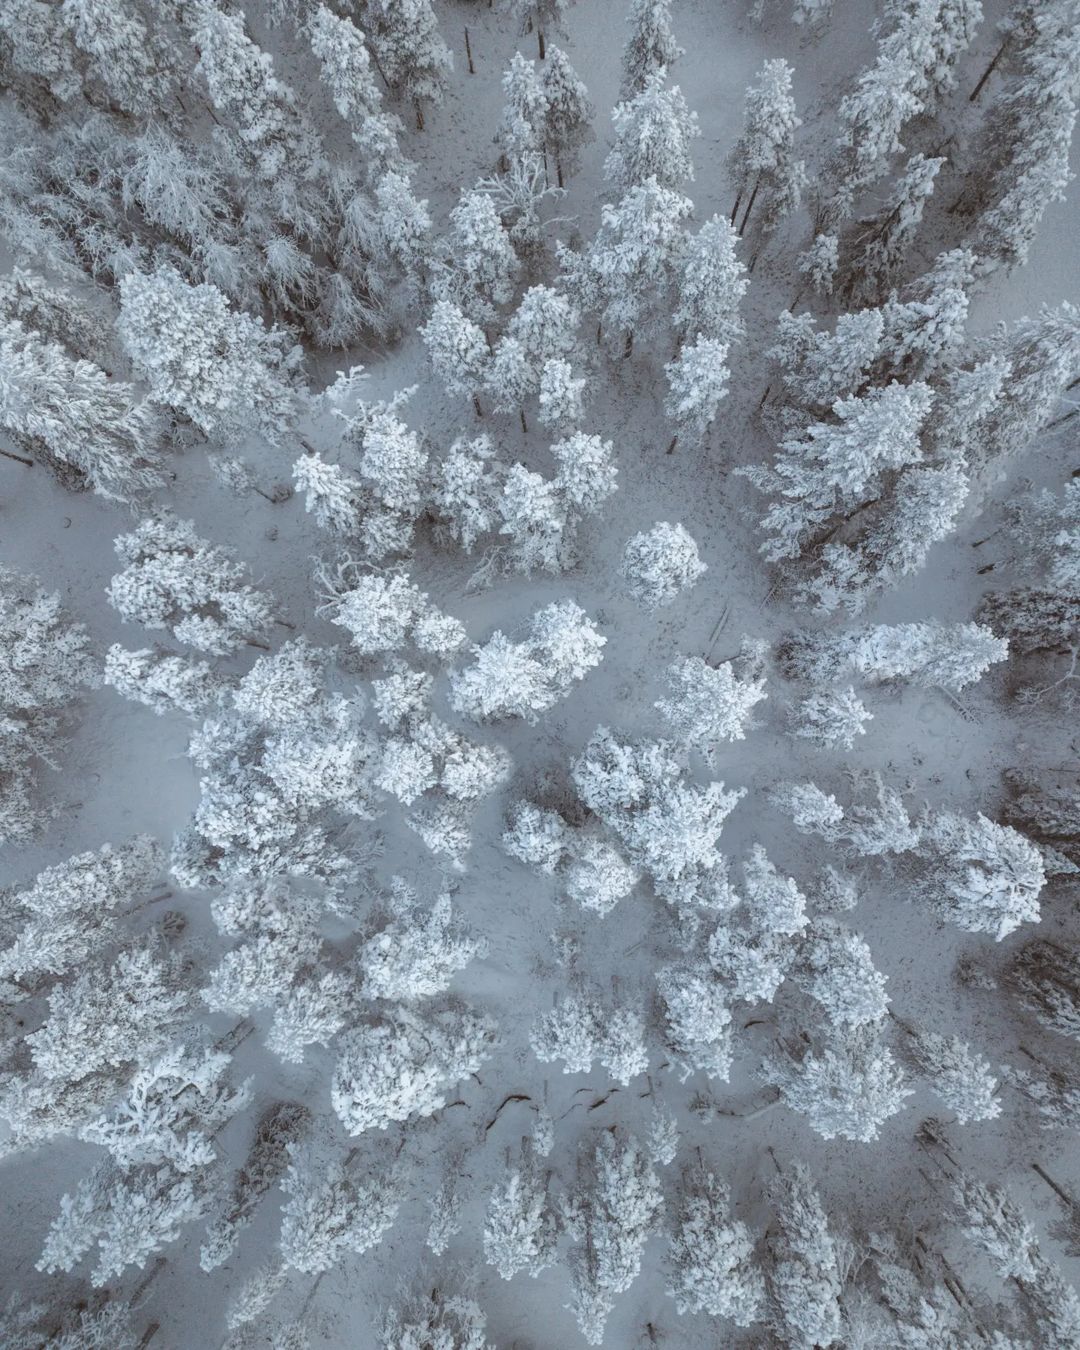 Природа Финляндии на снимках Санни Виеряли